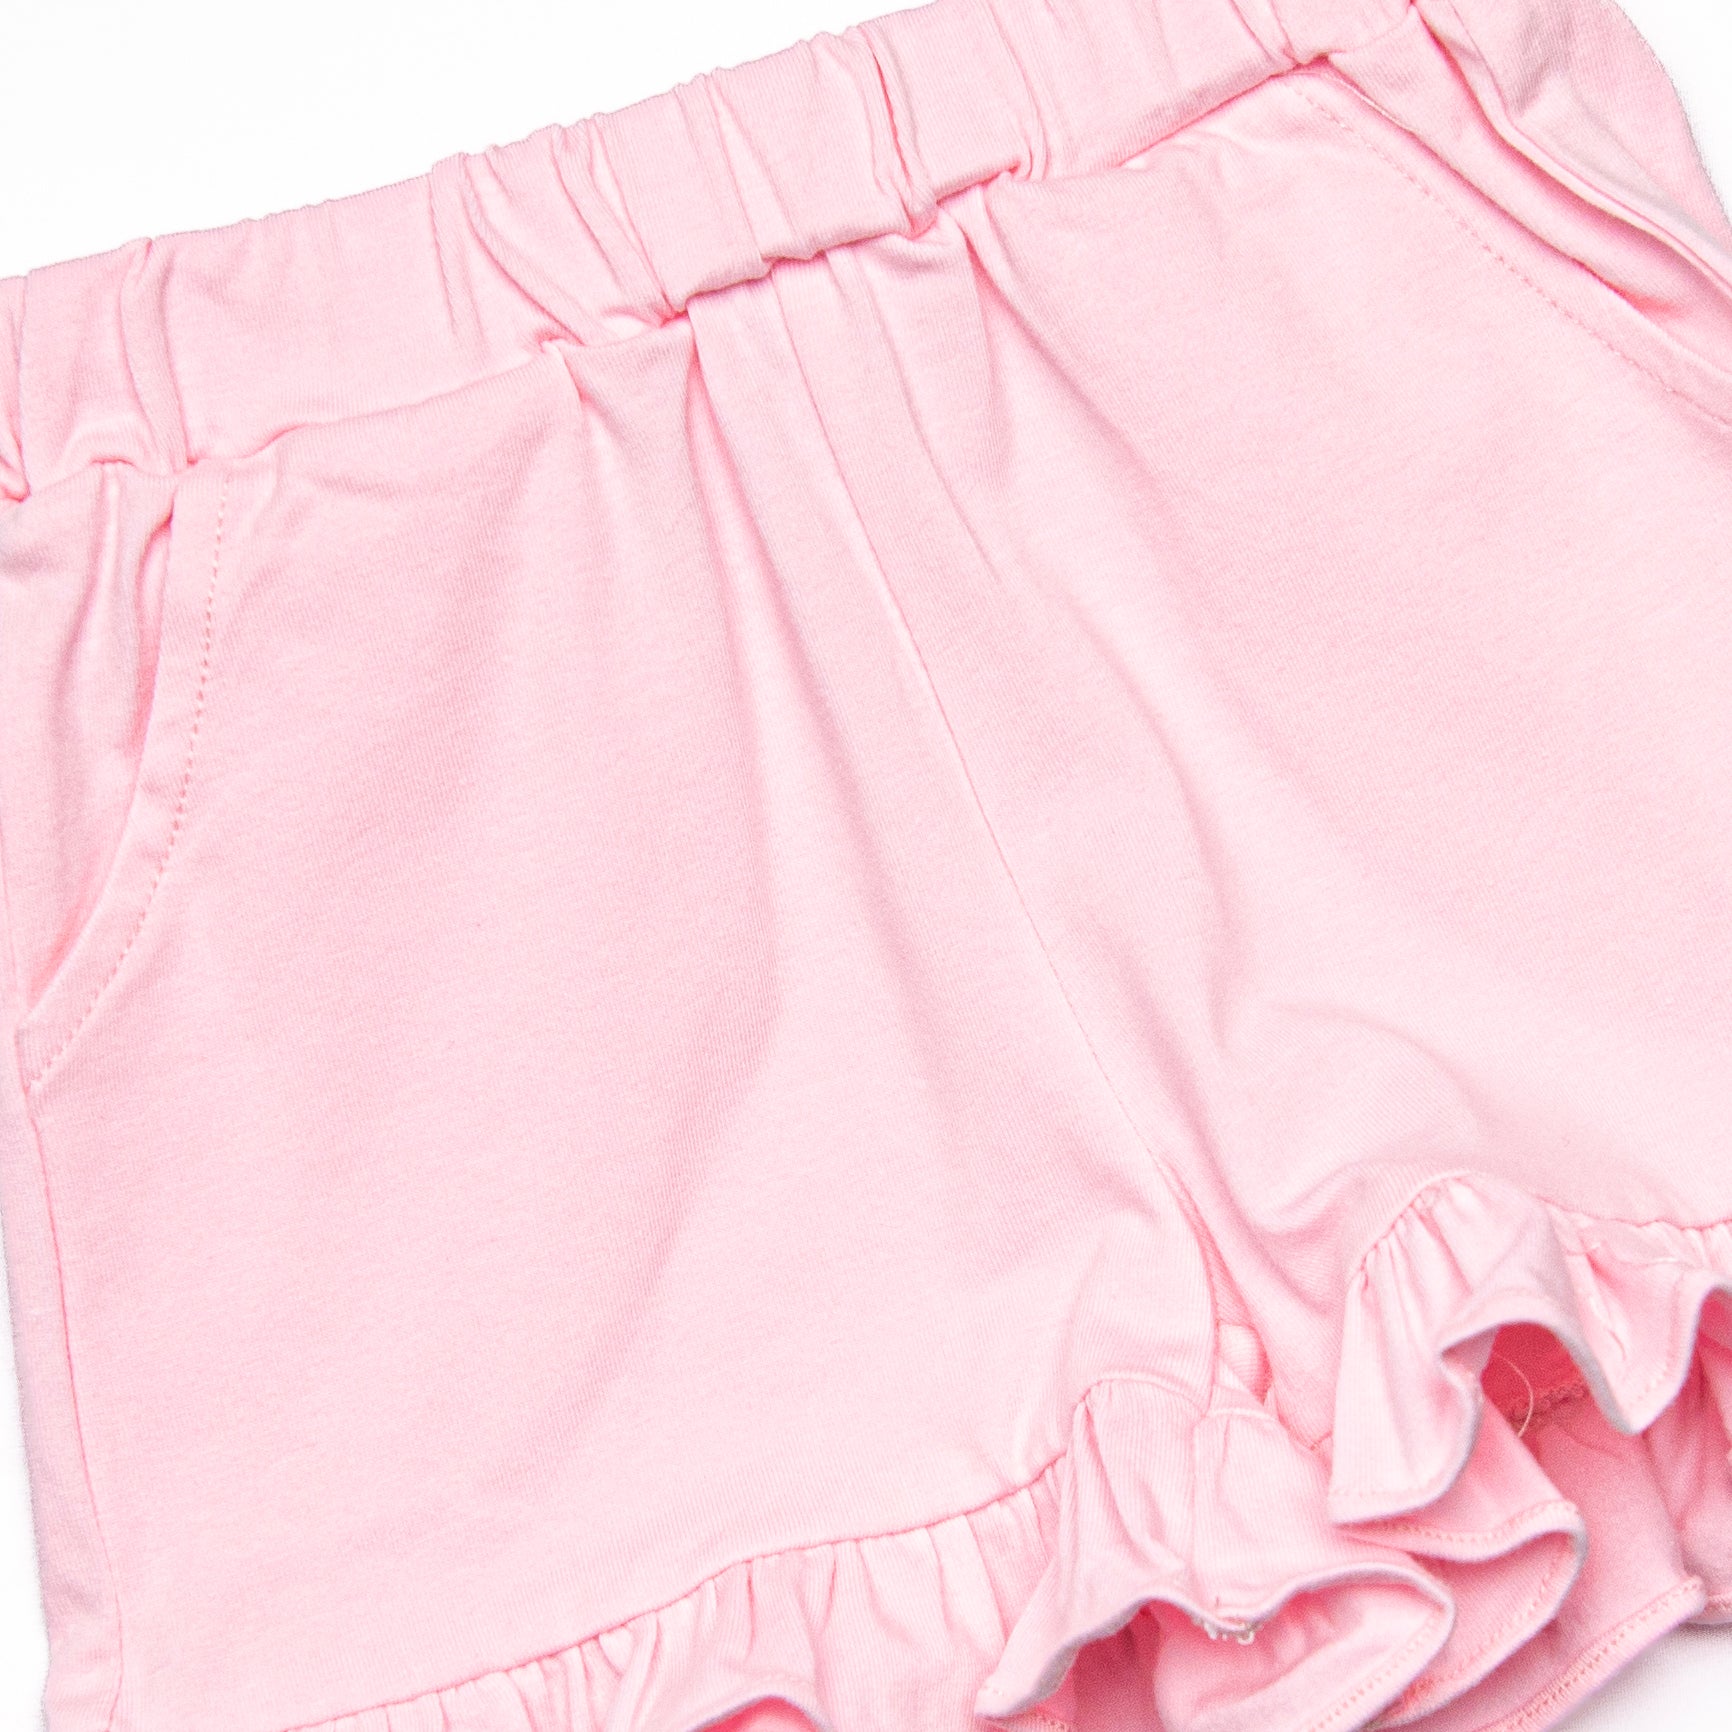 Hot Pink Ruffle Shorties, Hot Pink Ruffle Shorts - knit ruffle